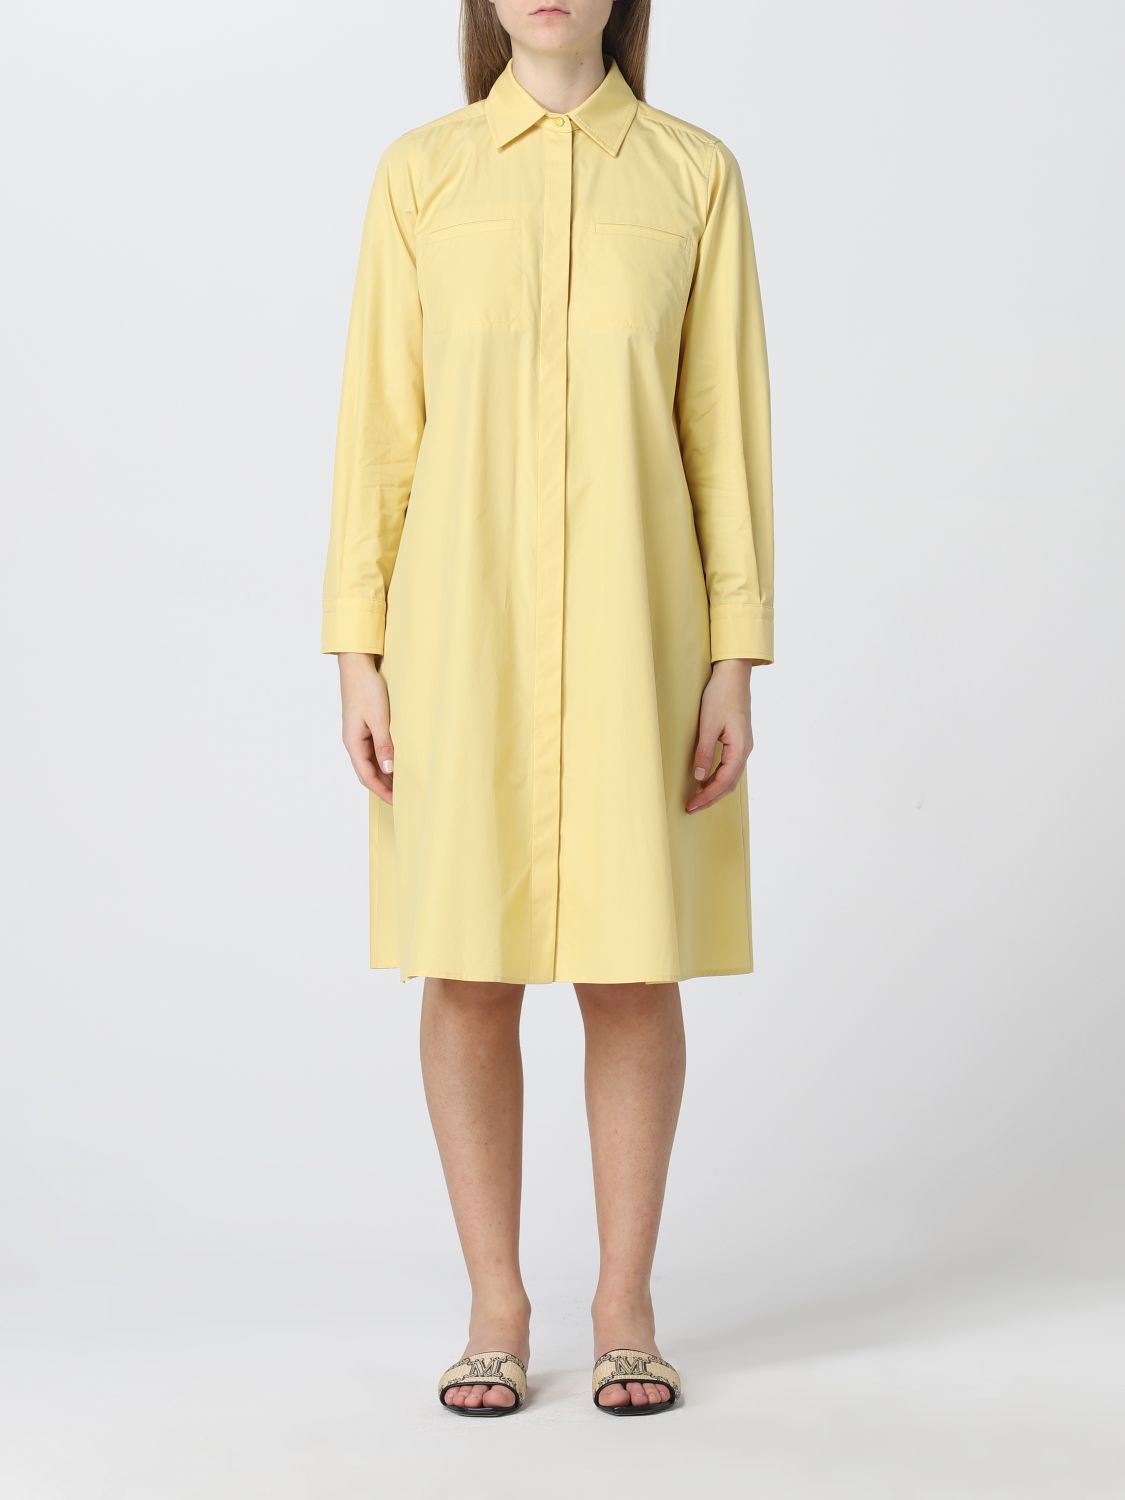 MAX MARA: cotton chemisier dress - Yellow | Max Mara dress 12211322600